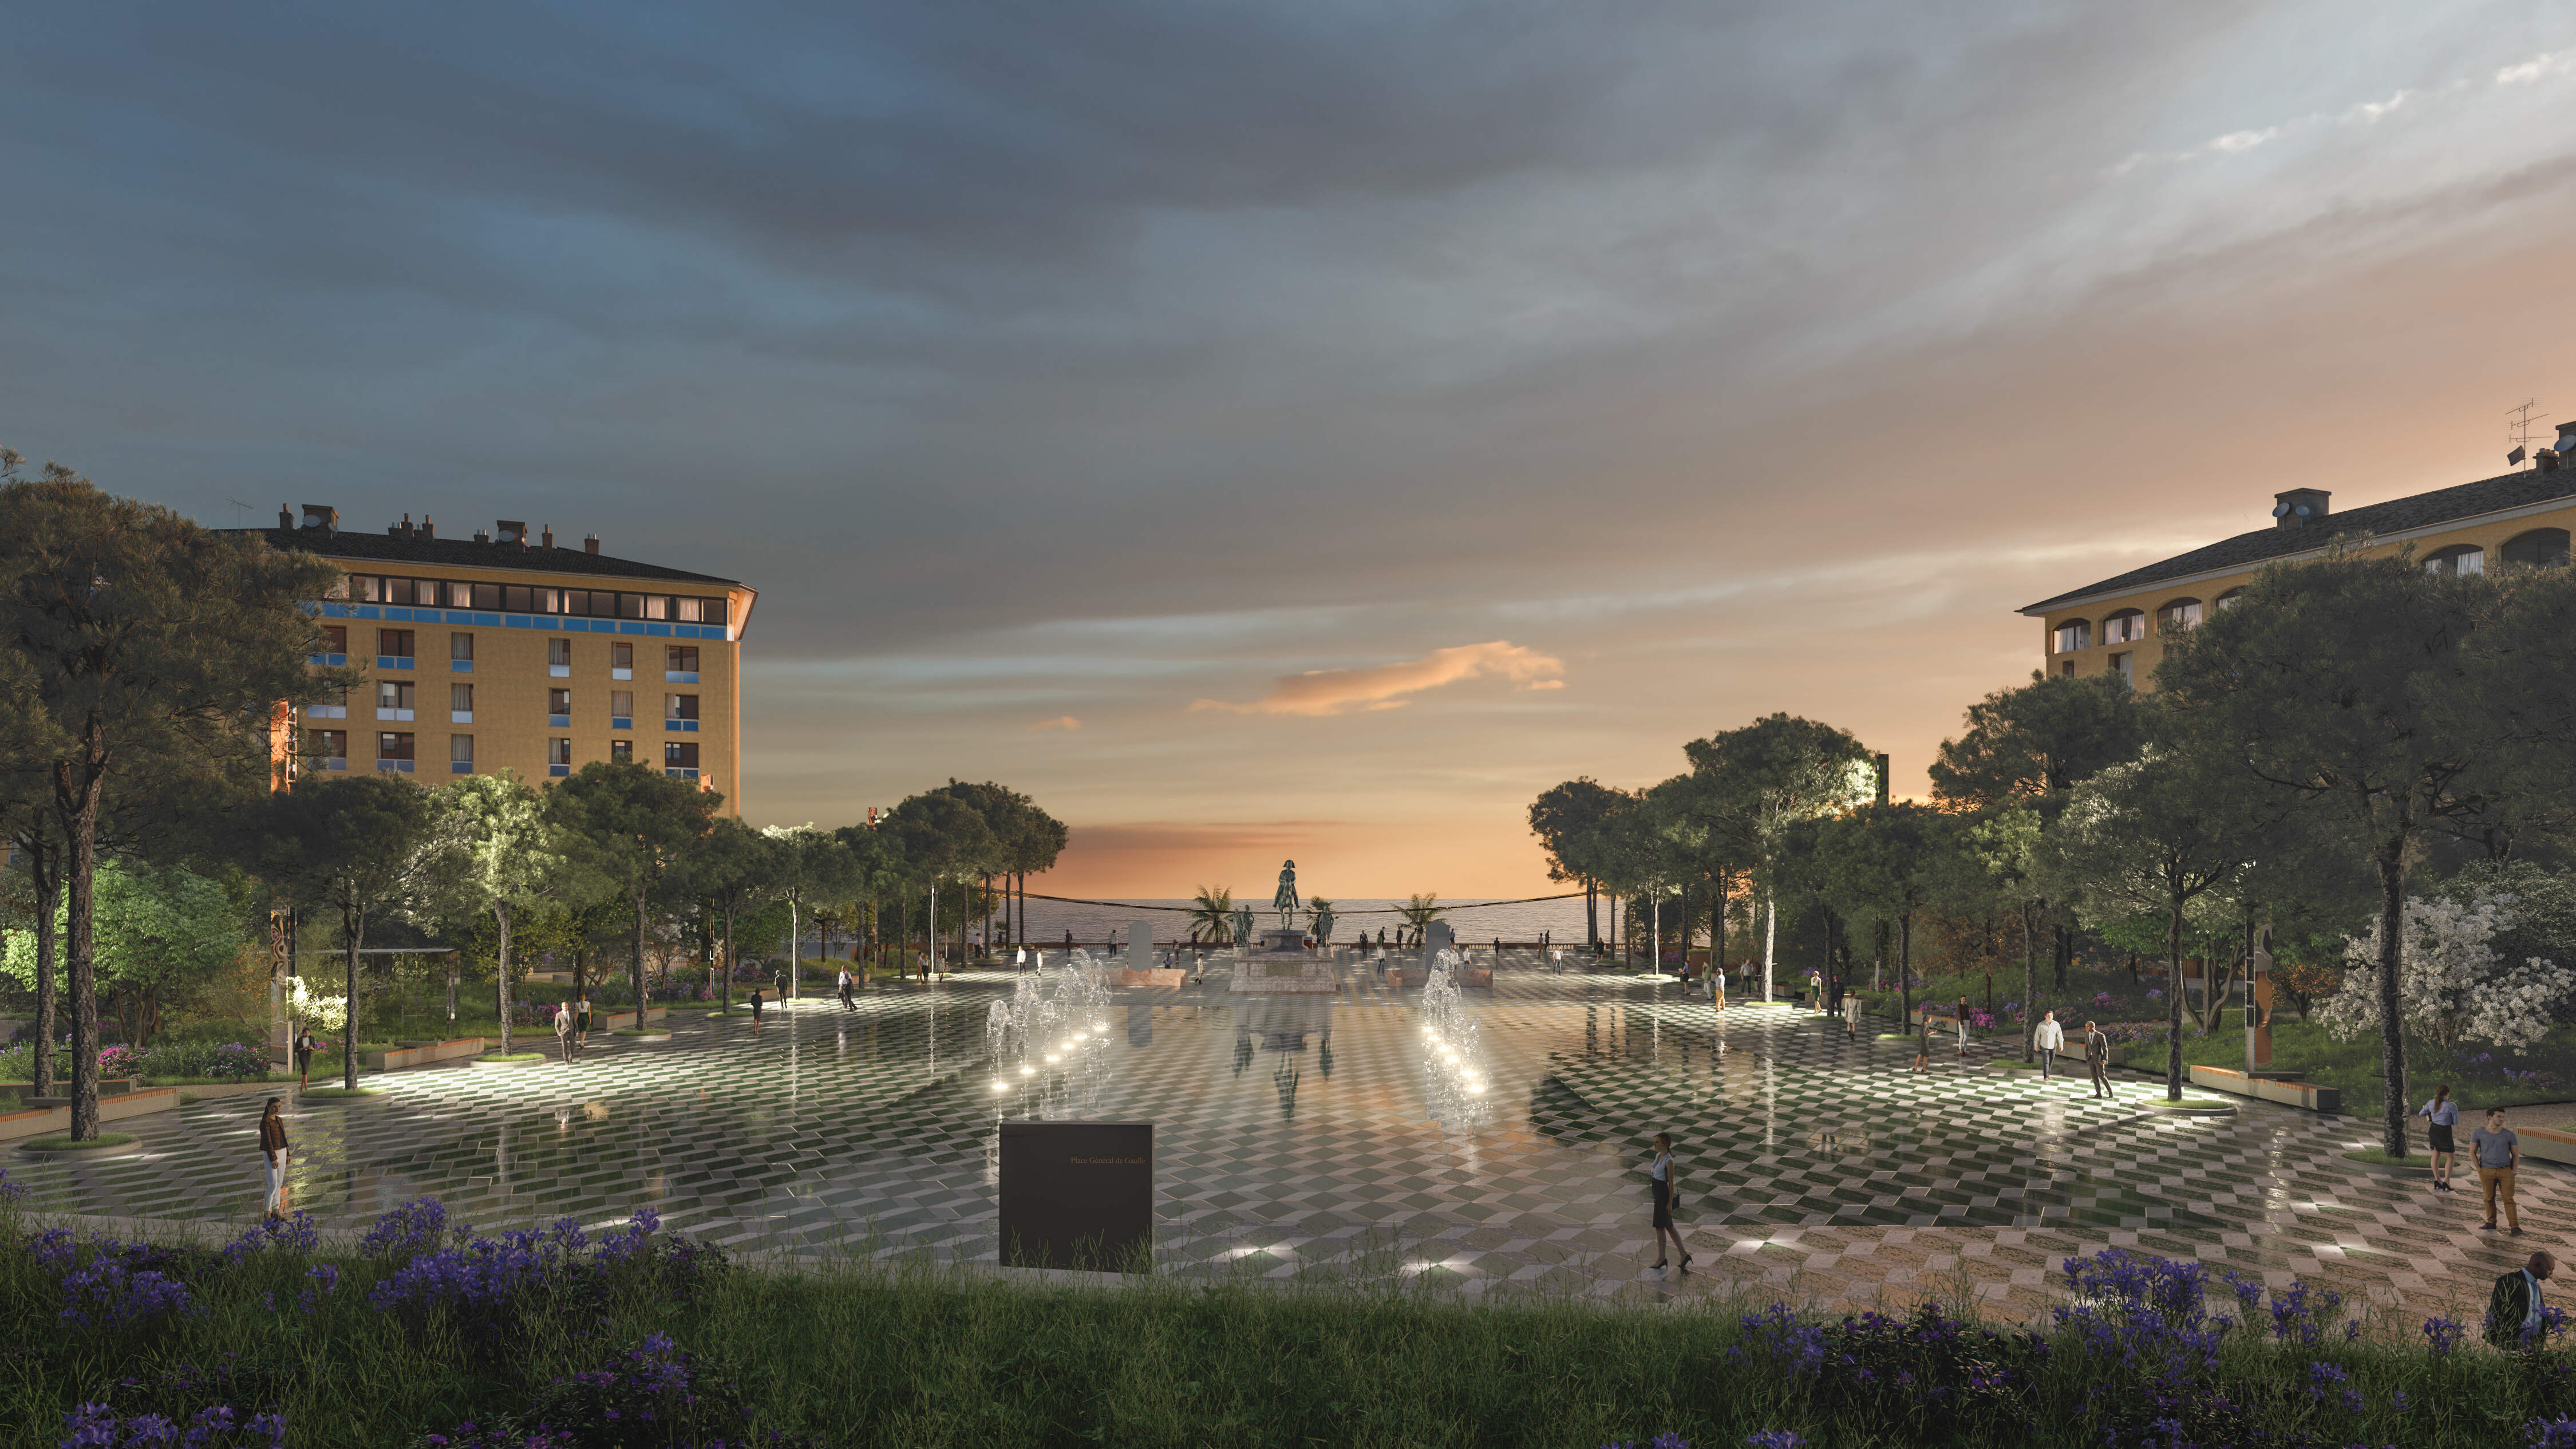 Ajaccio : Le projet de la nouvelle place Diamant fait l'unanimité au conseil municipal